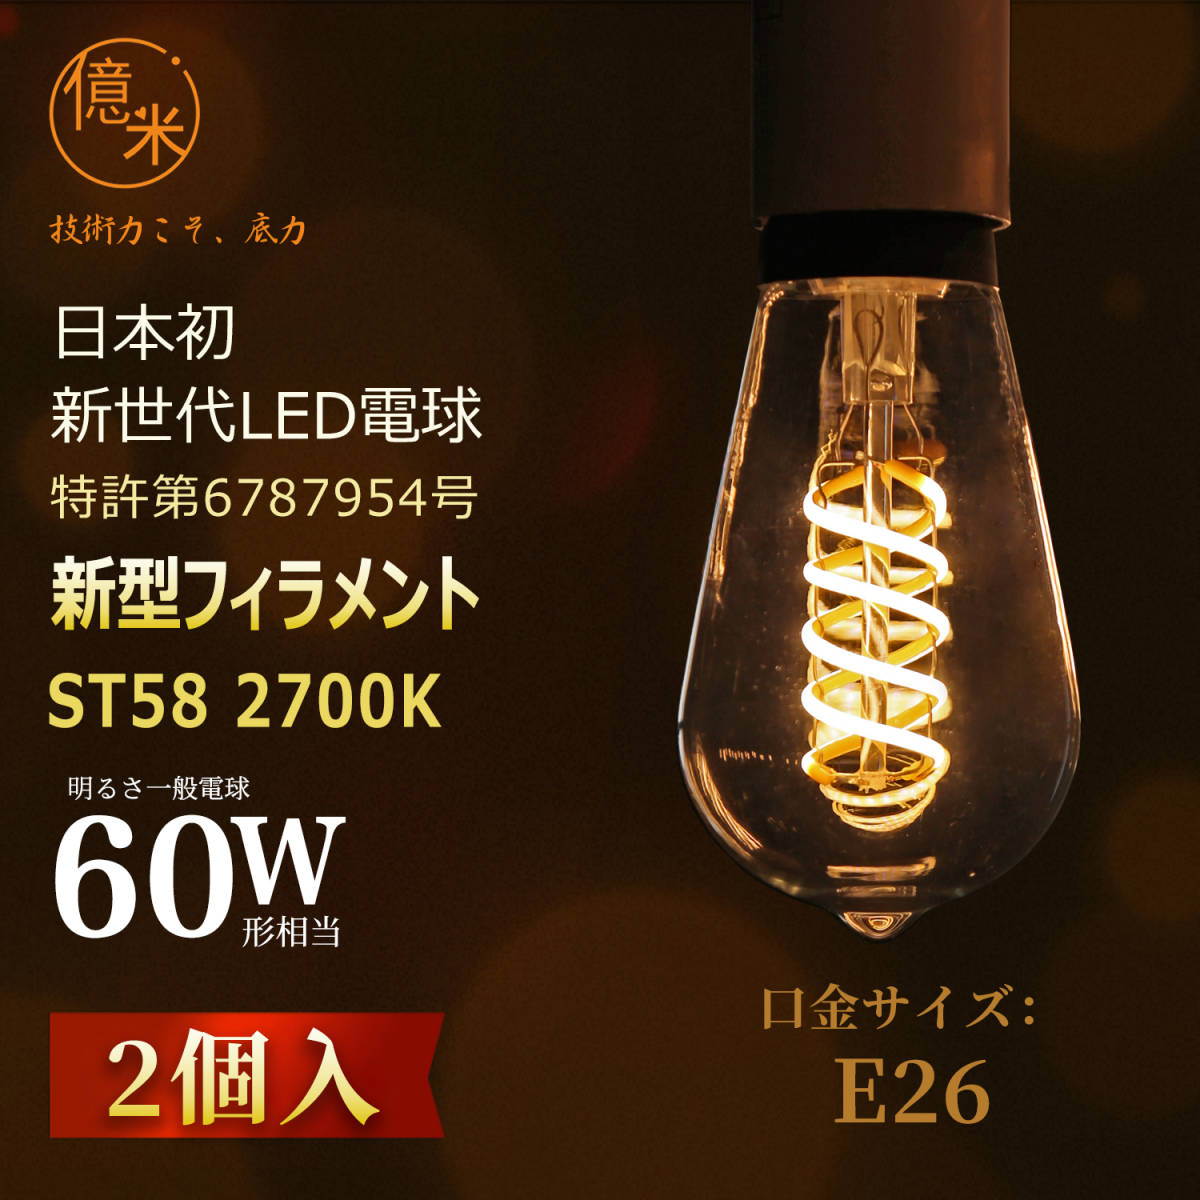 億米 ST58 6W（60W相当）2個入 2700K電球色 日本初新古典風 LED電球フィラメント E26 エジソンランプレトロ風 調光非対応 【日本特許取得】_画像2